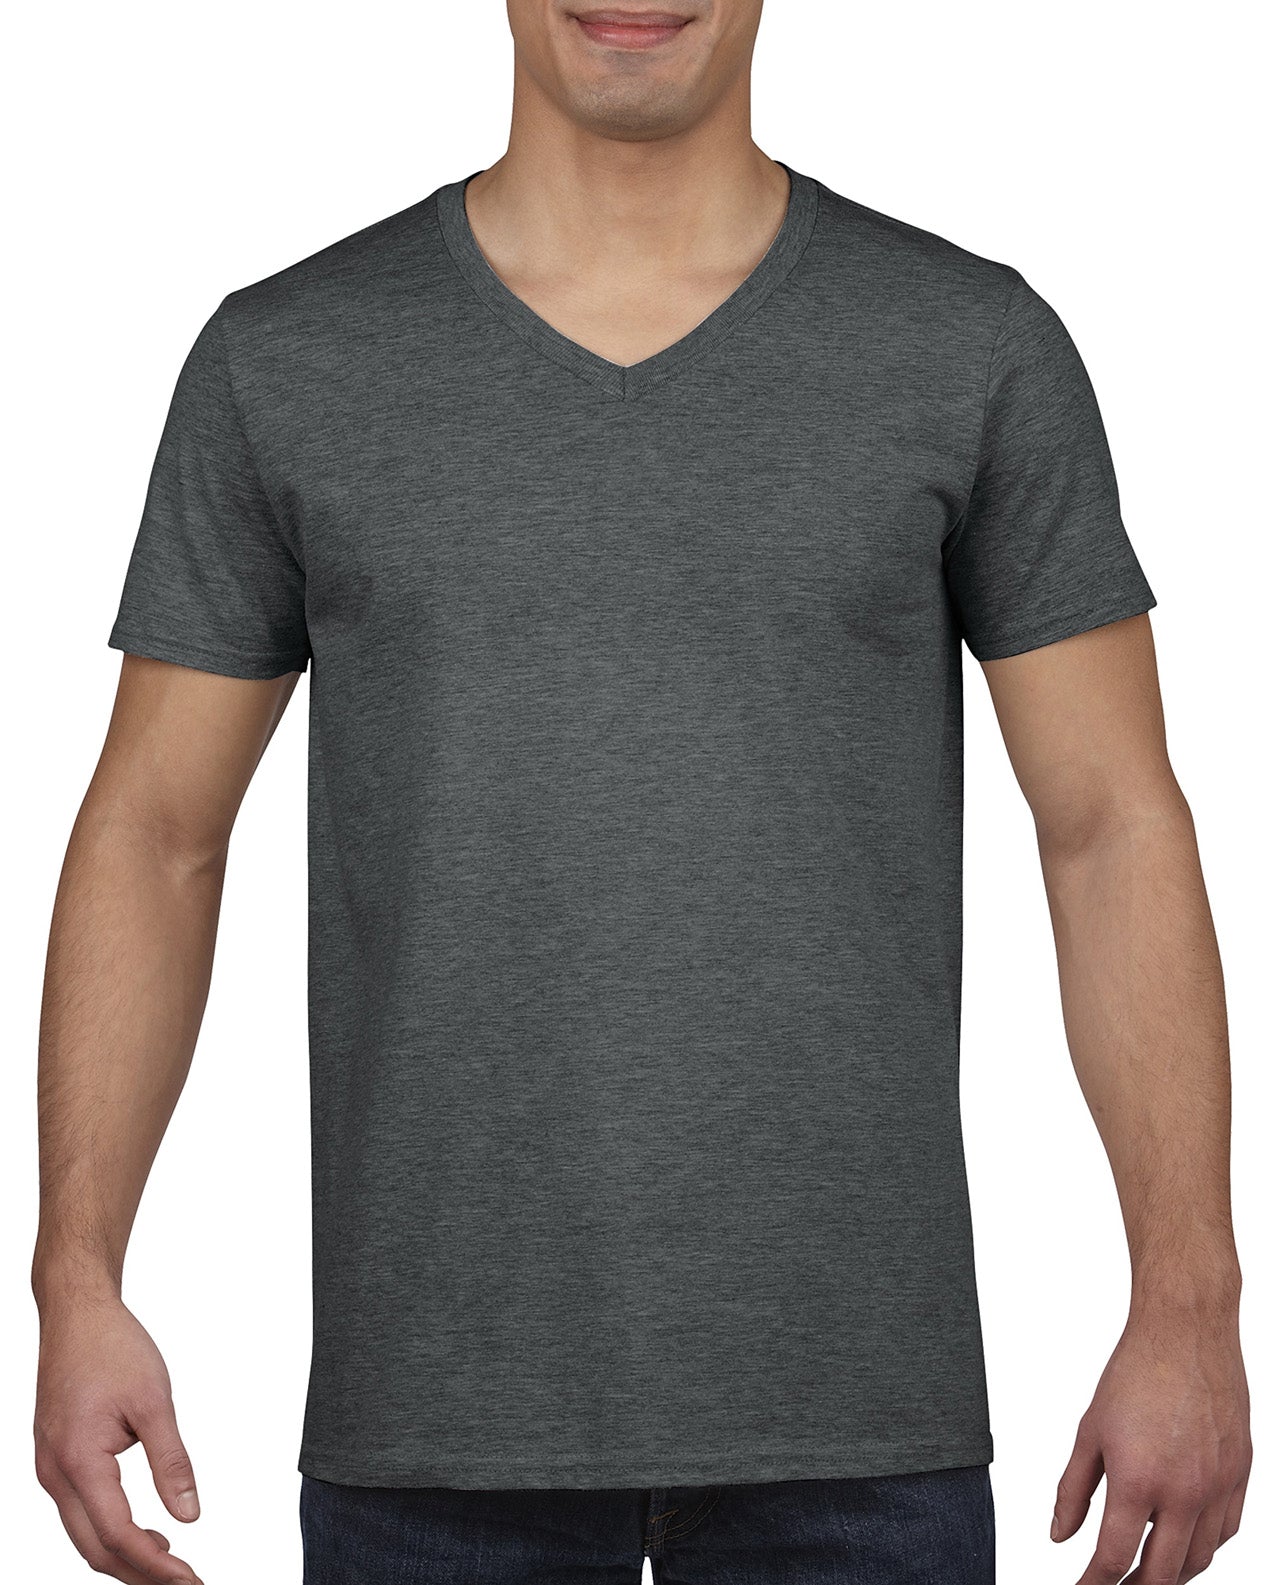 Custom Adult V-Neck T-Shirt - otkworld